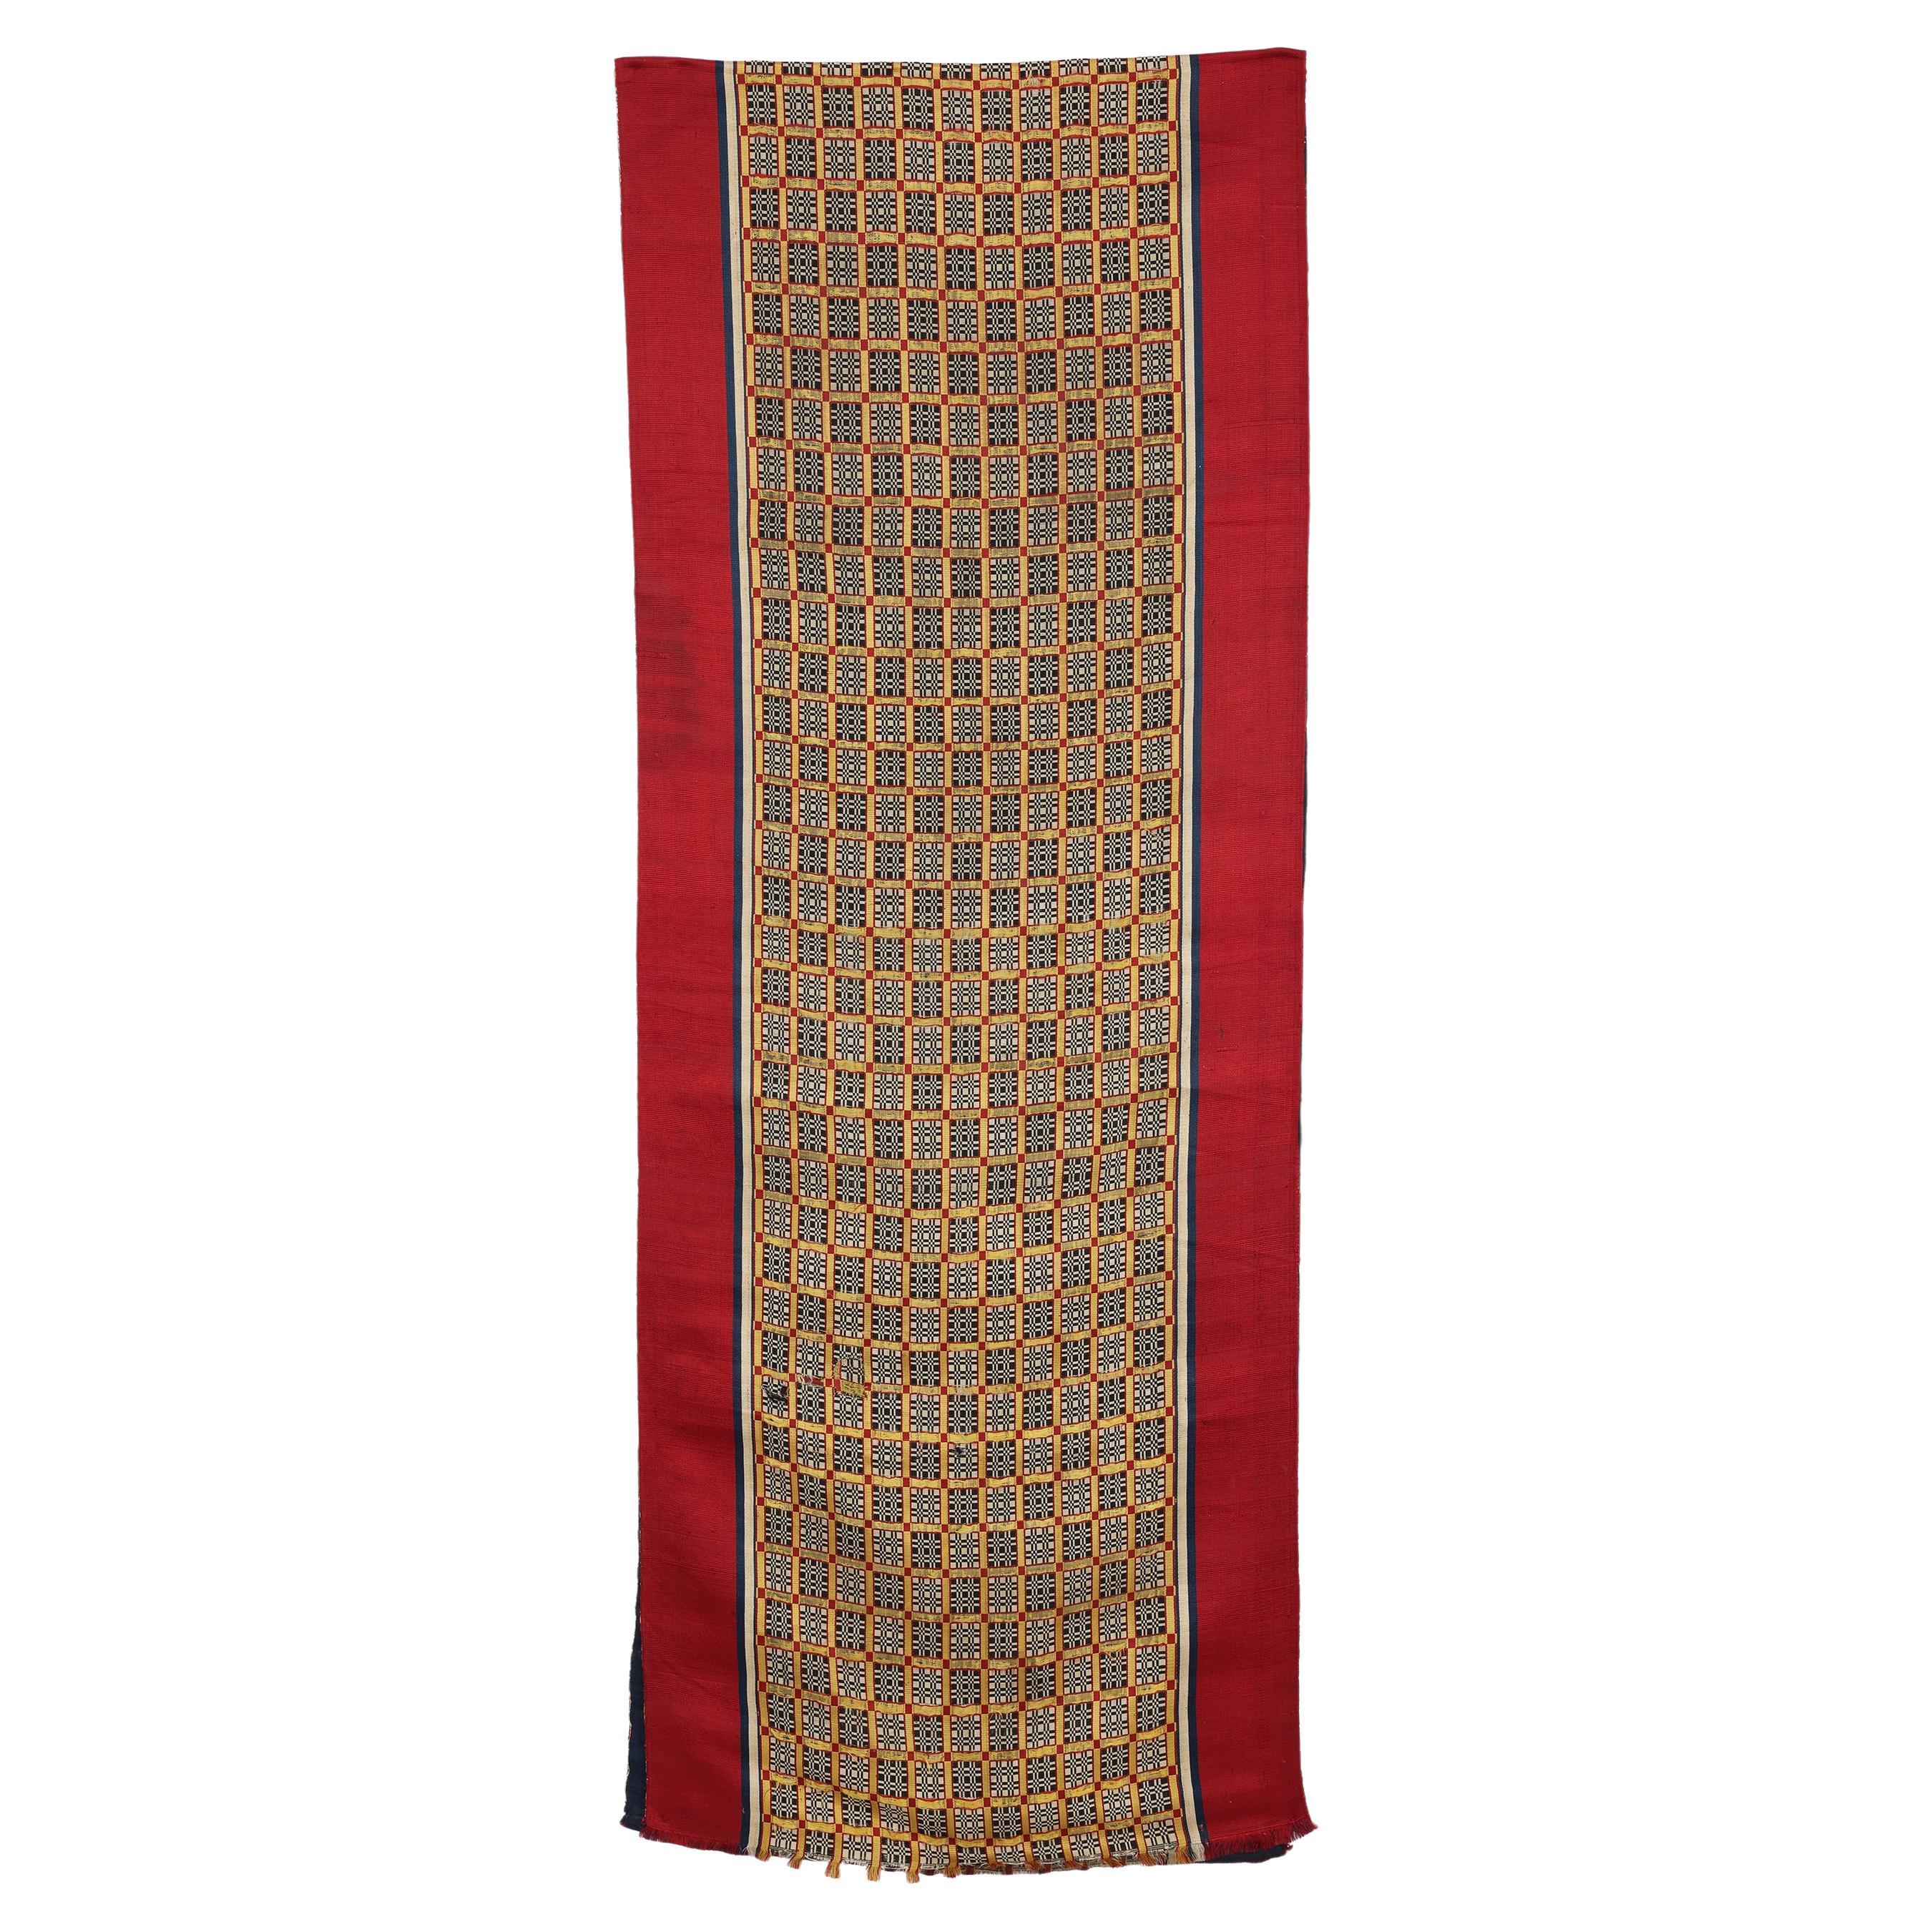 Gewebter Vorhang oder Hängeleuchter aus antiker Seide, Tetouan, Marokko